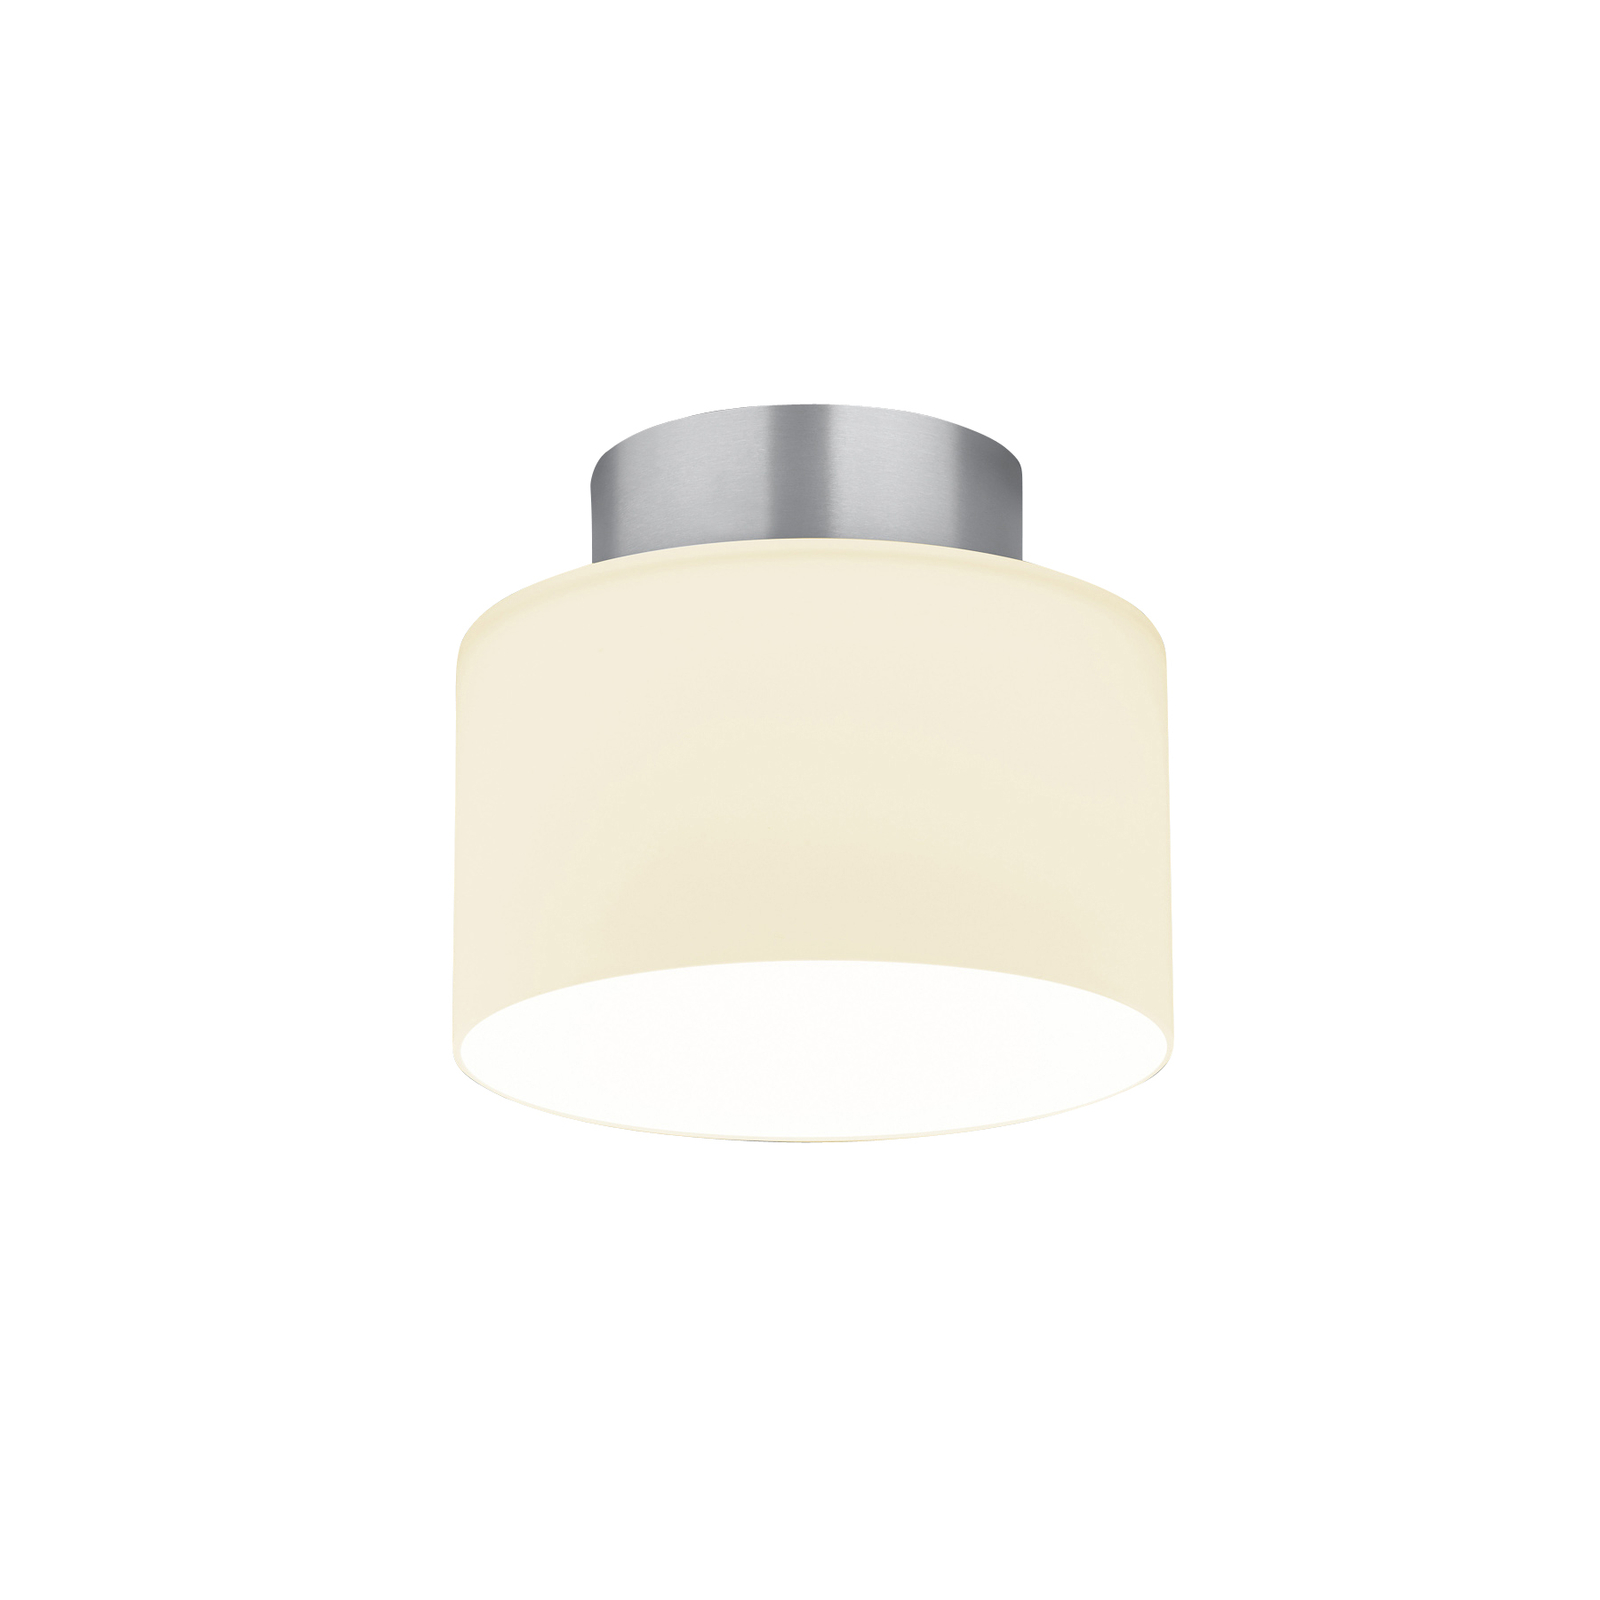 BANKAMP Grand Opal loftslampe i aluminium Ø 20 cm